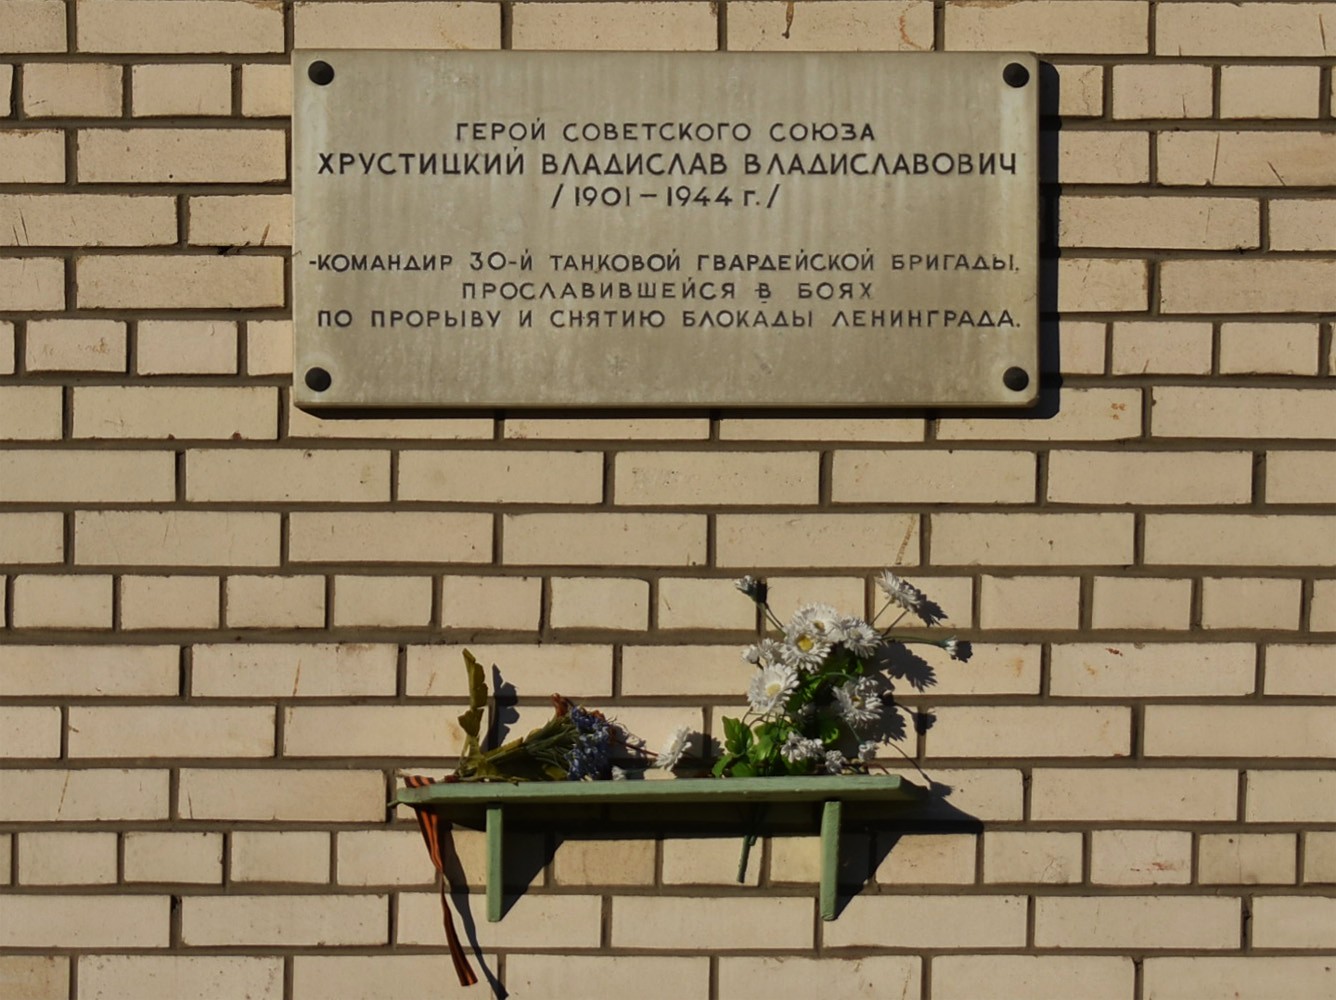 Peterburi, Бульвар Новаторов, 116. Peterburi — Мемориальные доски